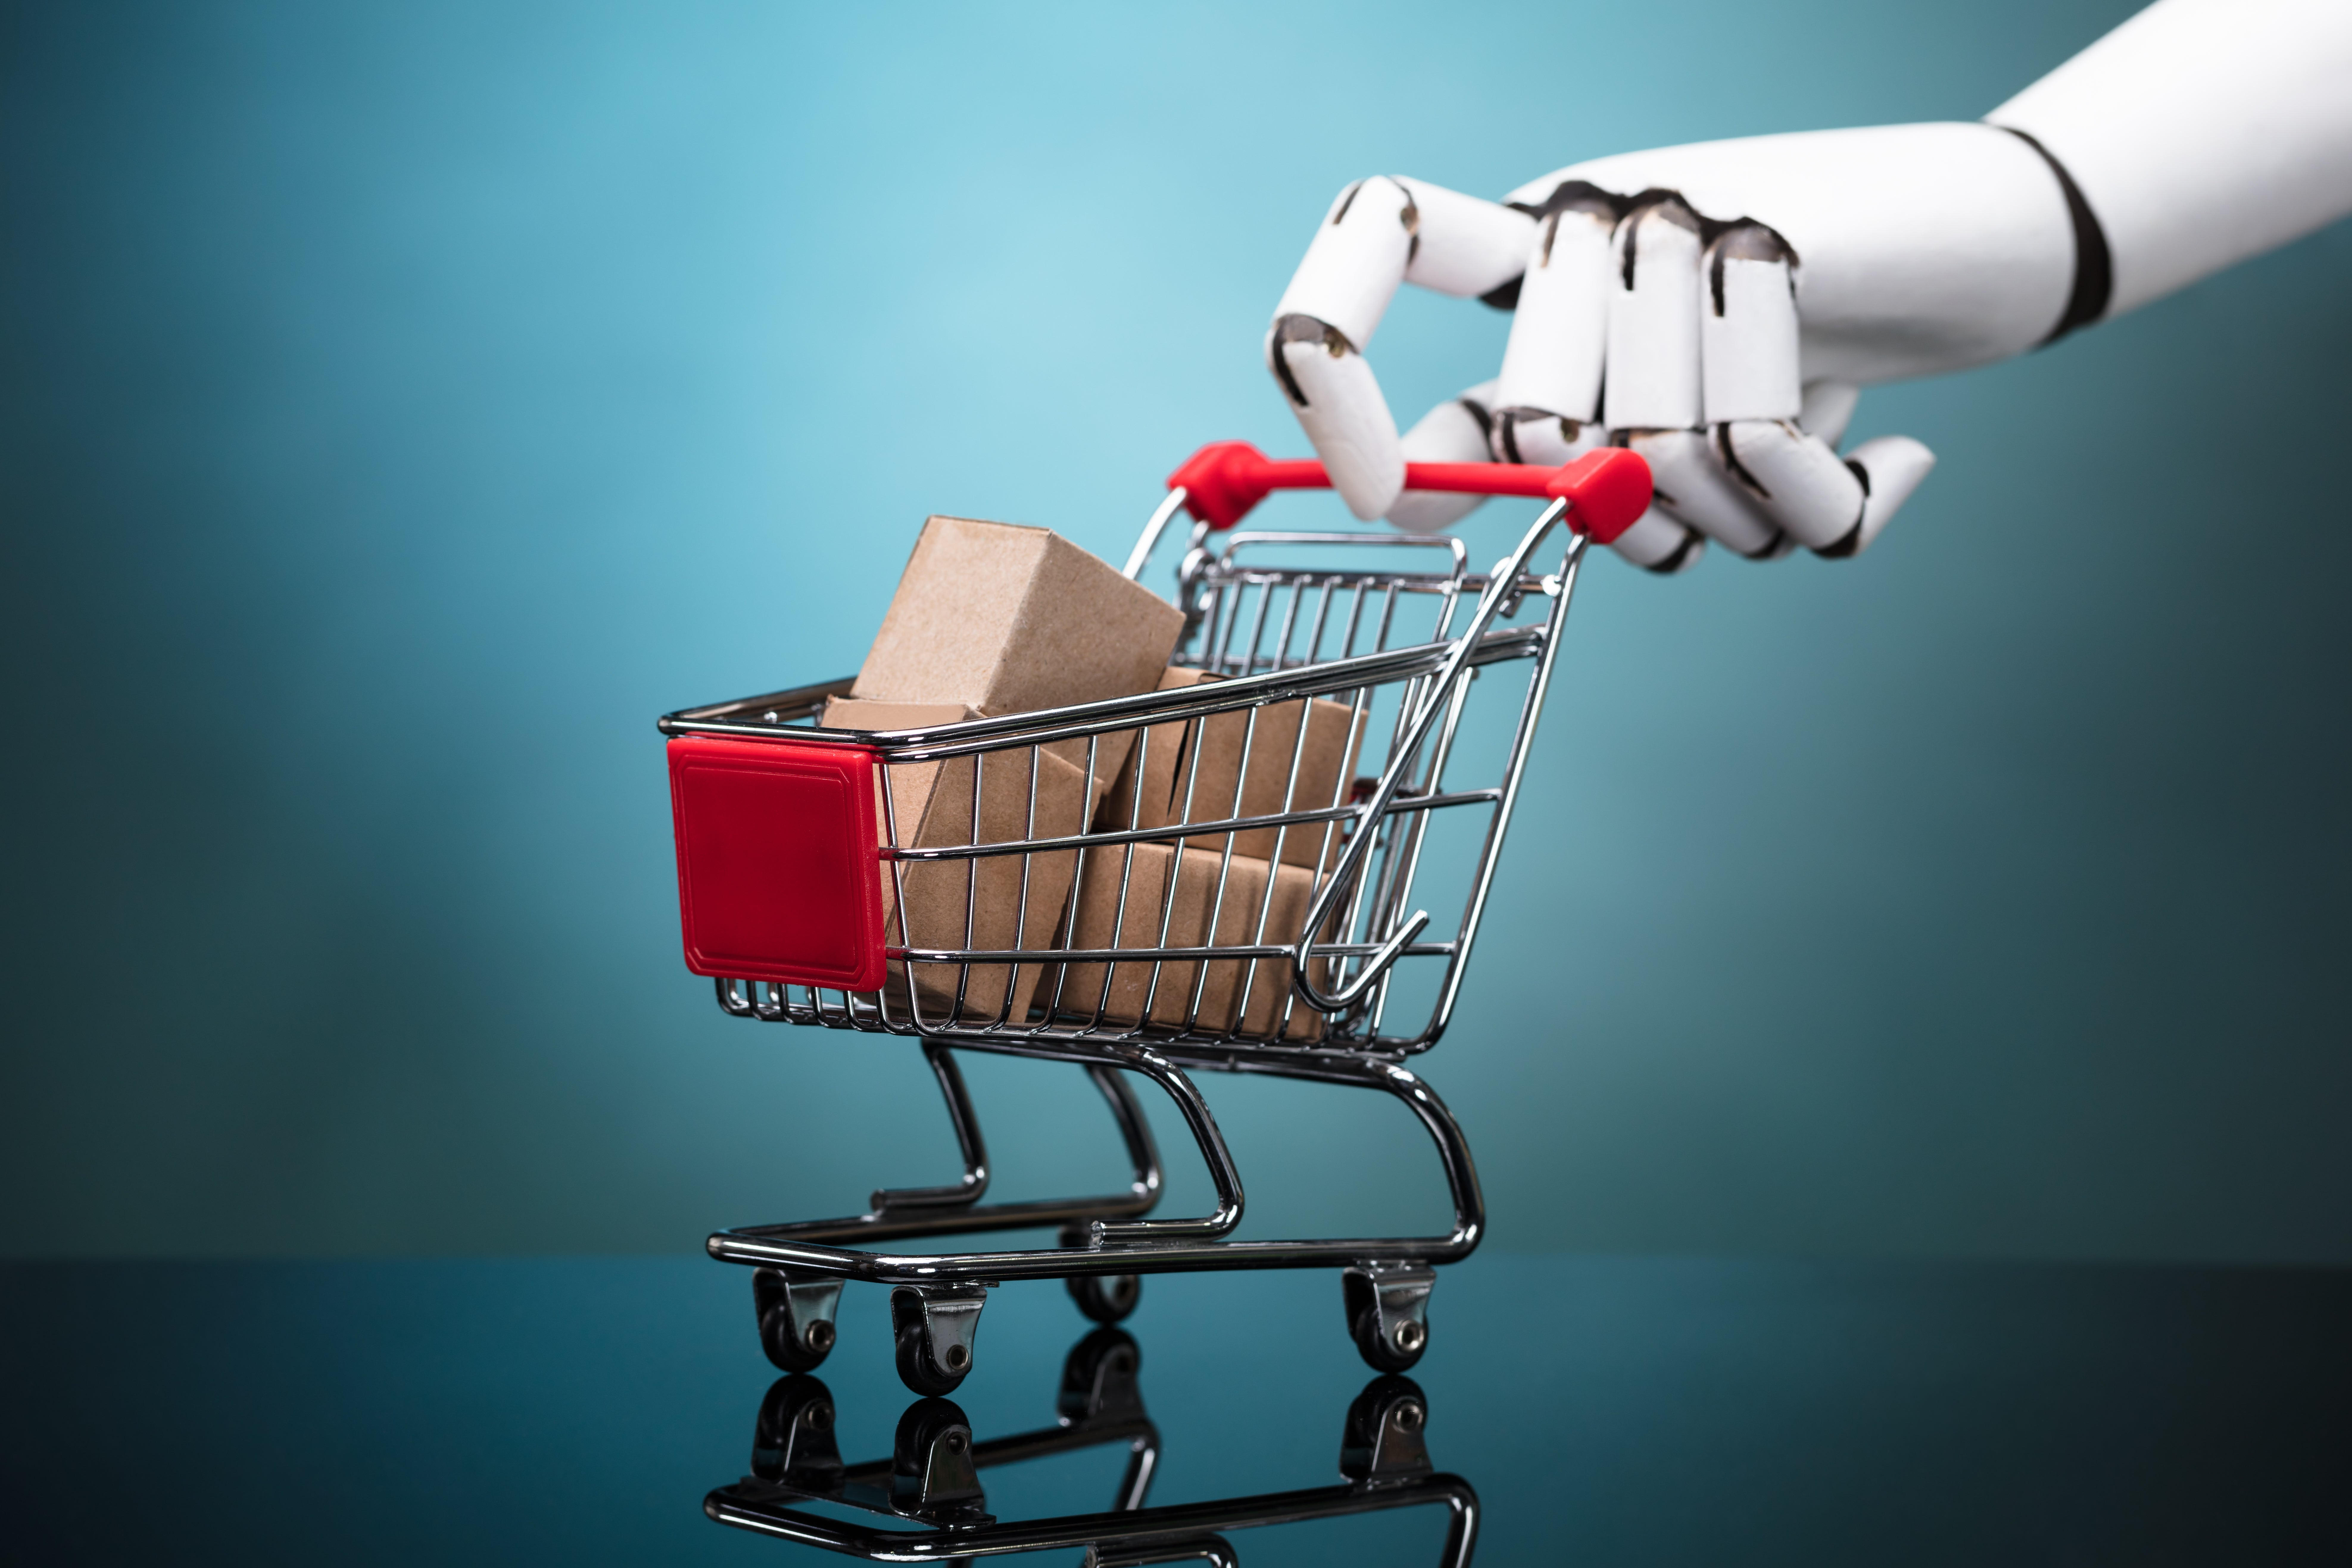 AI robot arm pushing a shopping cart